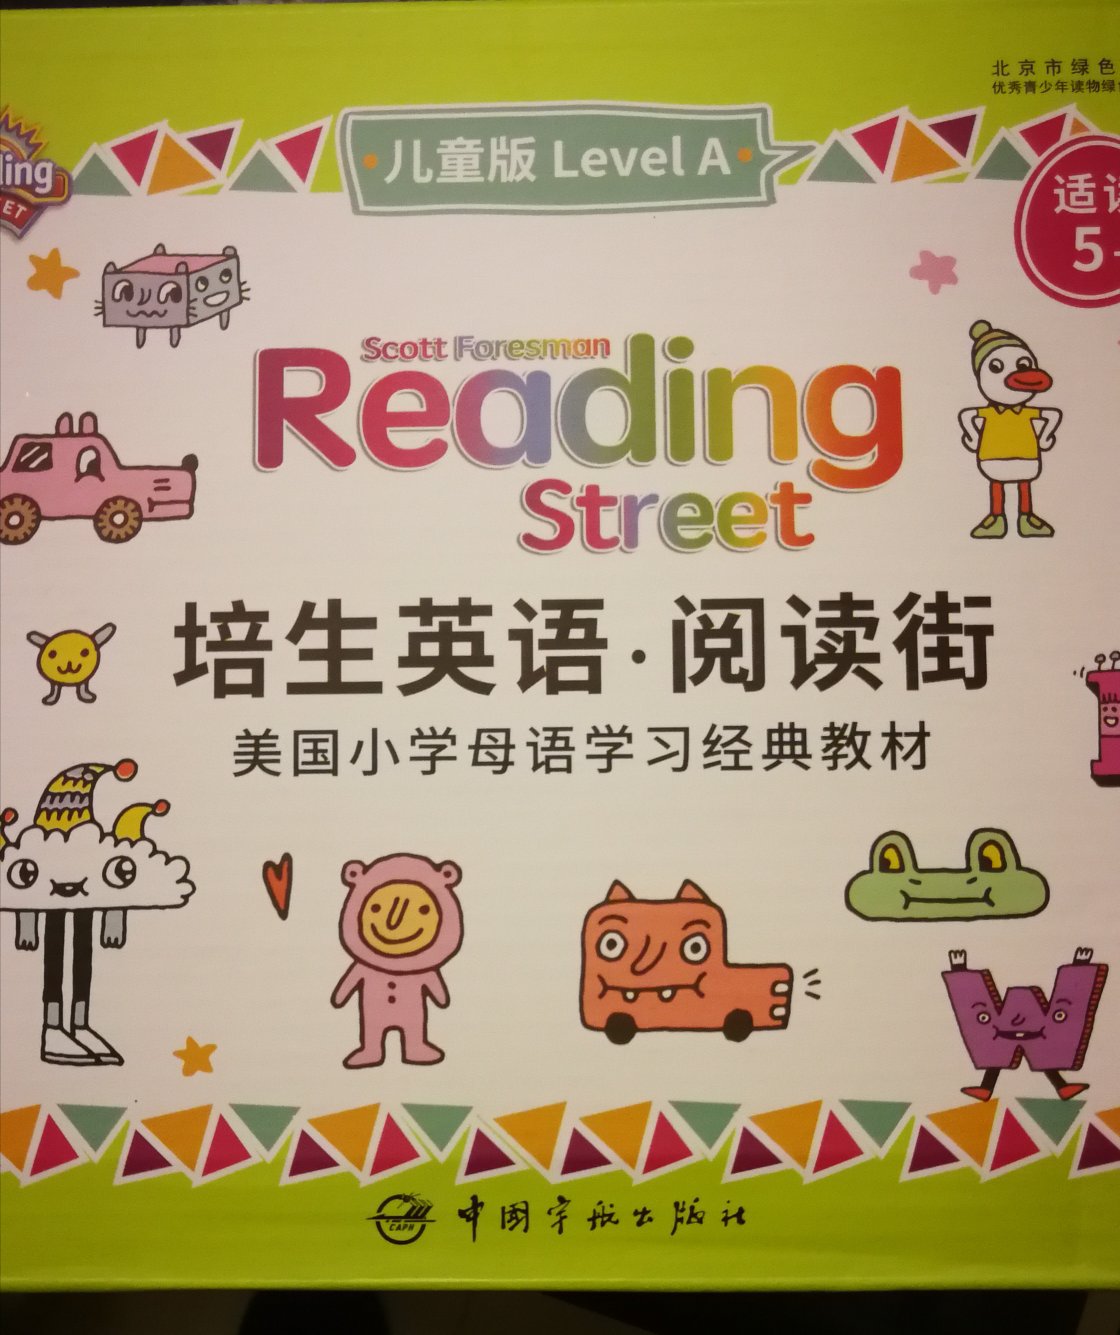 《培生英语·阅读街》由美国培生教育出版集团出版，这套小学版一共60本书、2本学习指导手册、2本练习册和2张光盘。这套教材的题材涵盖面广，内容包含故事、科学、社会、历史等方方面面，每一本也很薄，不会让孩子感觉学习负担很重。该书的引导式阅读方法，使孩子在学习过程中不仅能提升英语水平，培养英语思维方式，还能全方位加强阅读理解能力，真是挺不错，值得替孩子买一套！！！